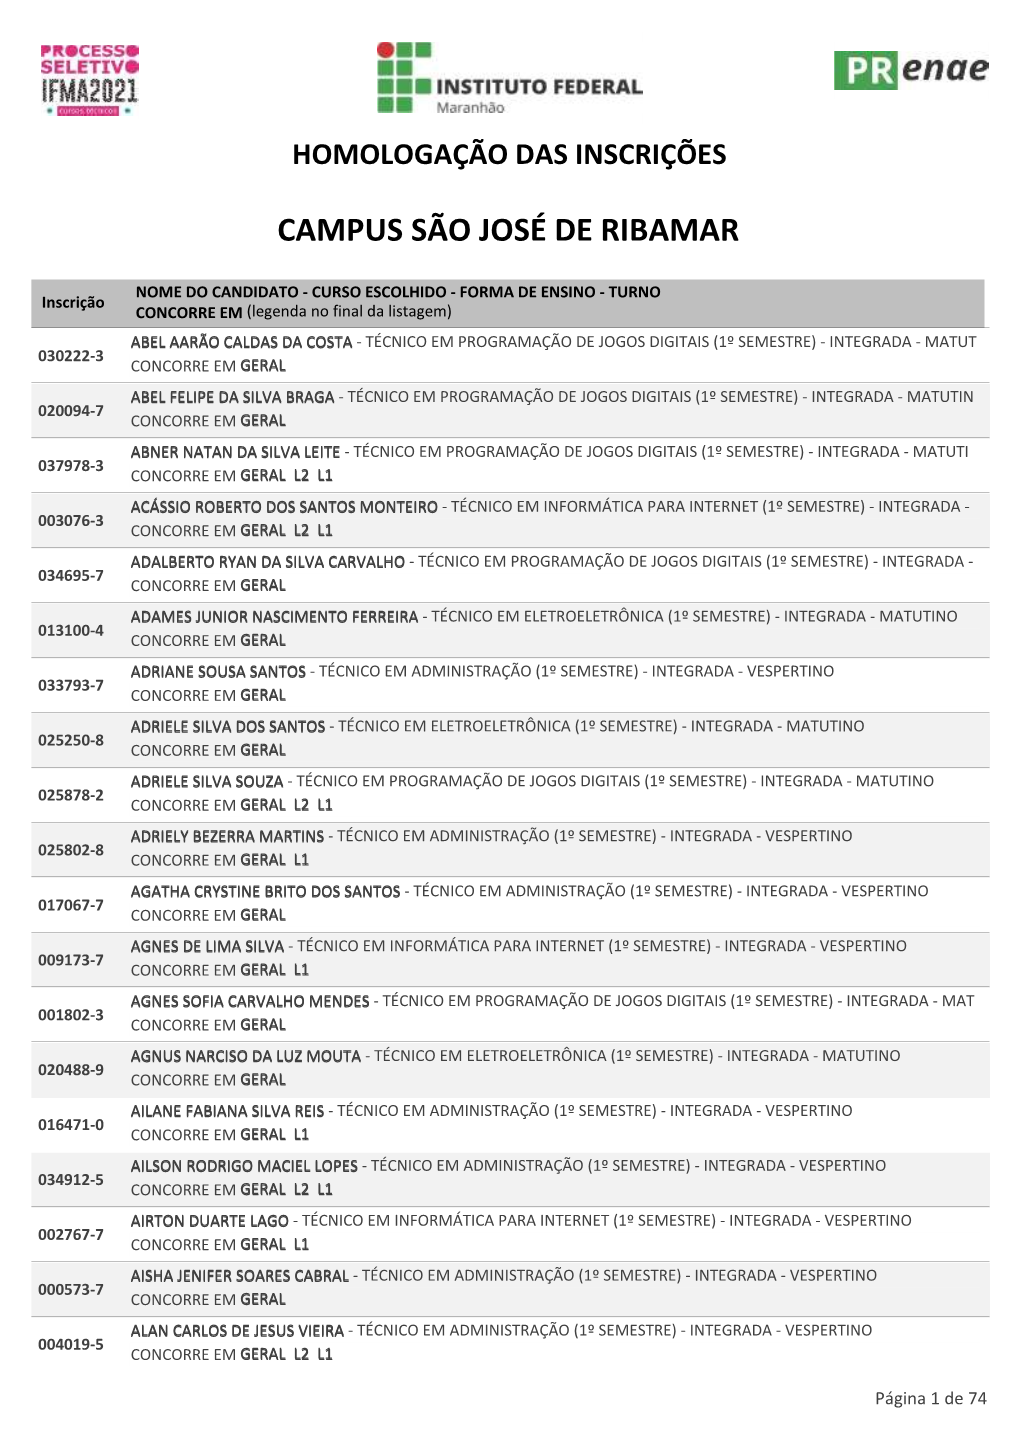 Campus São José De Ribamar